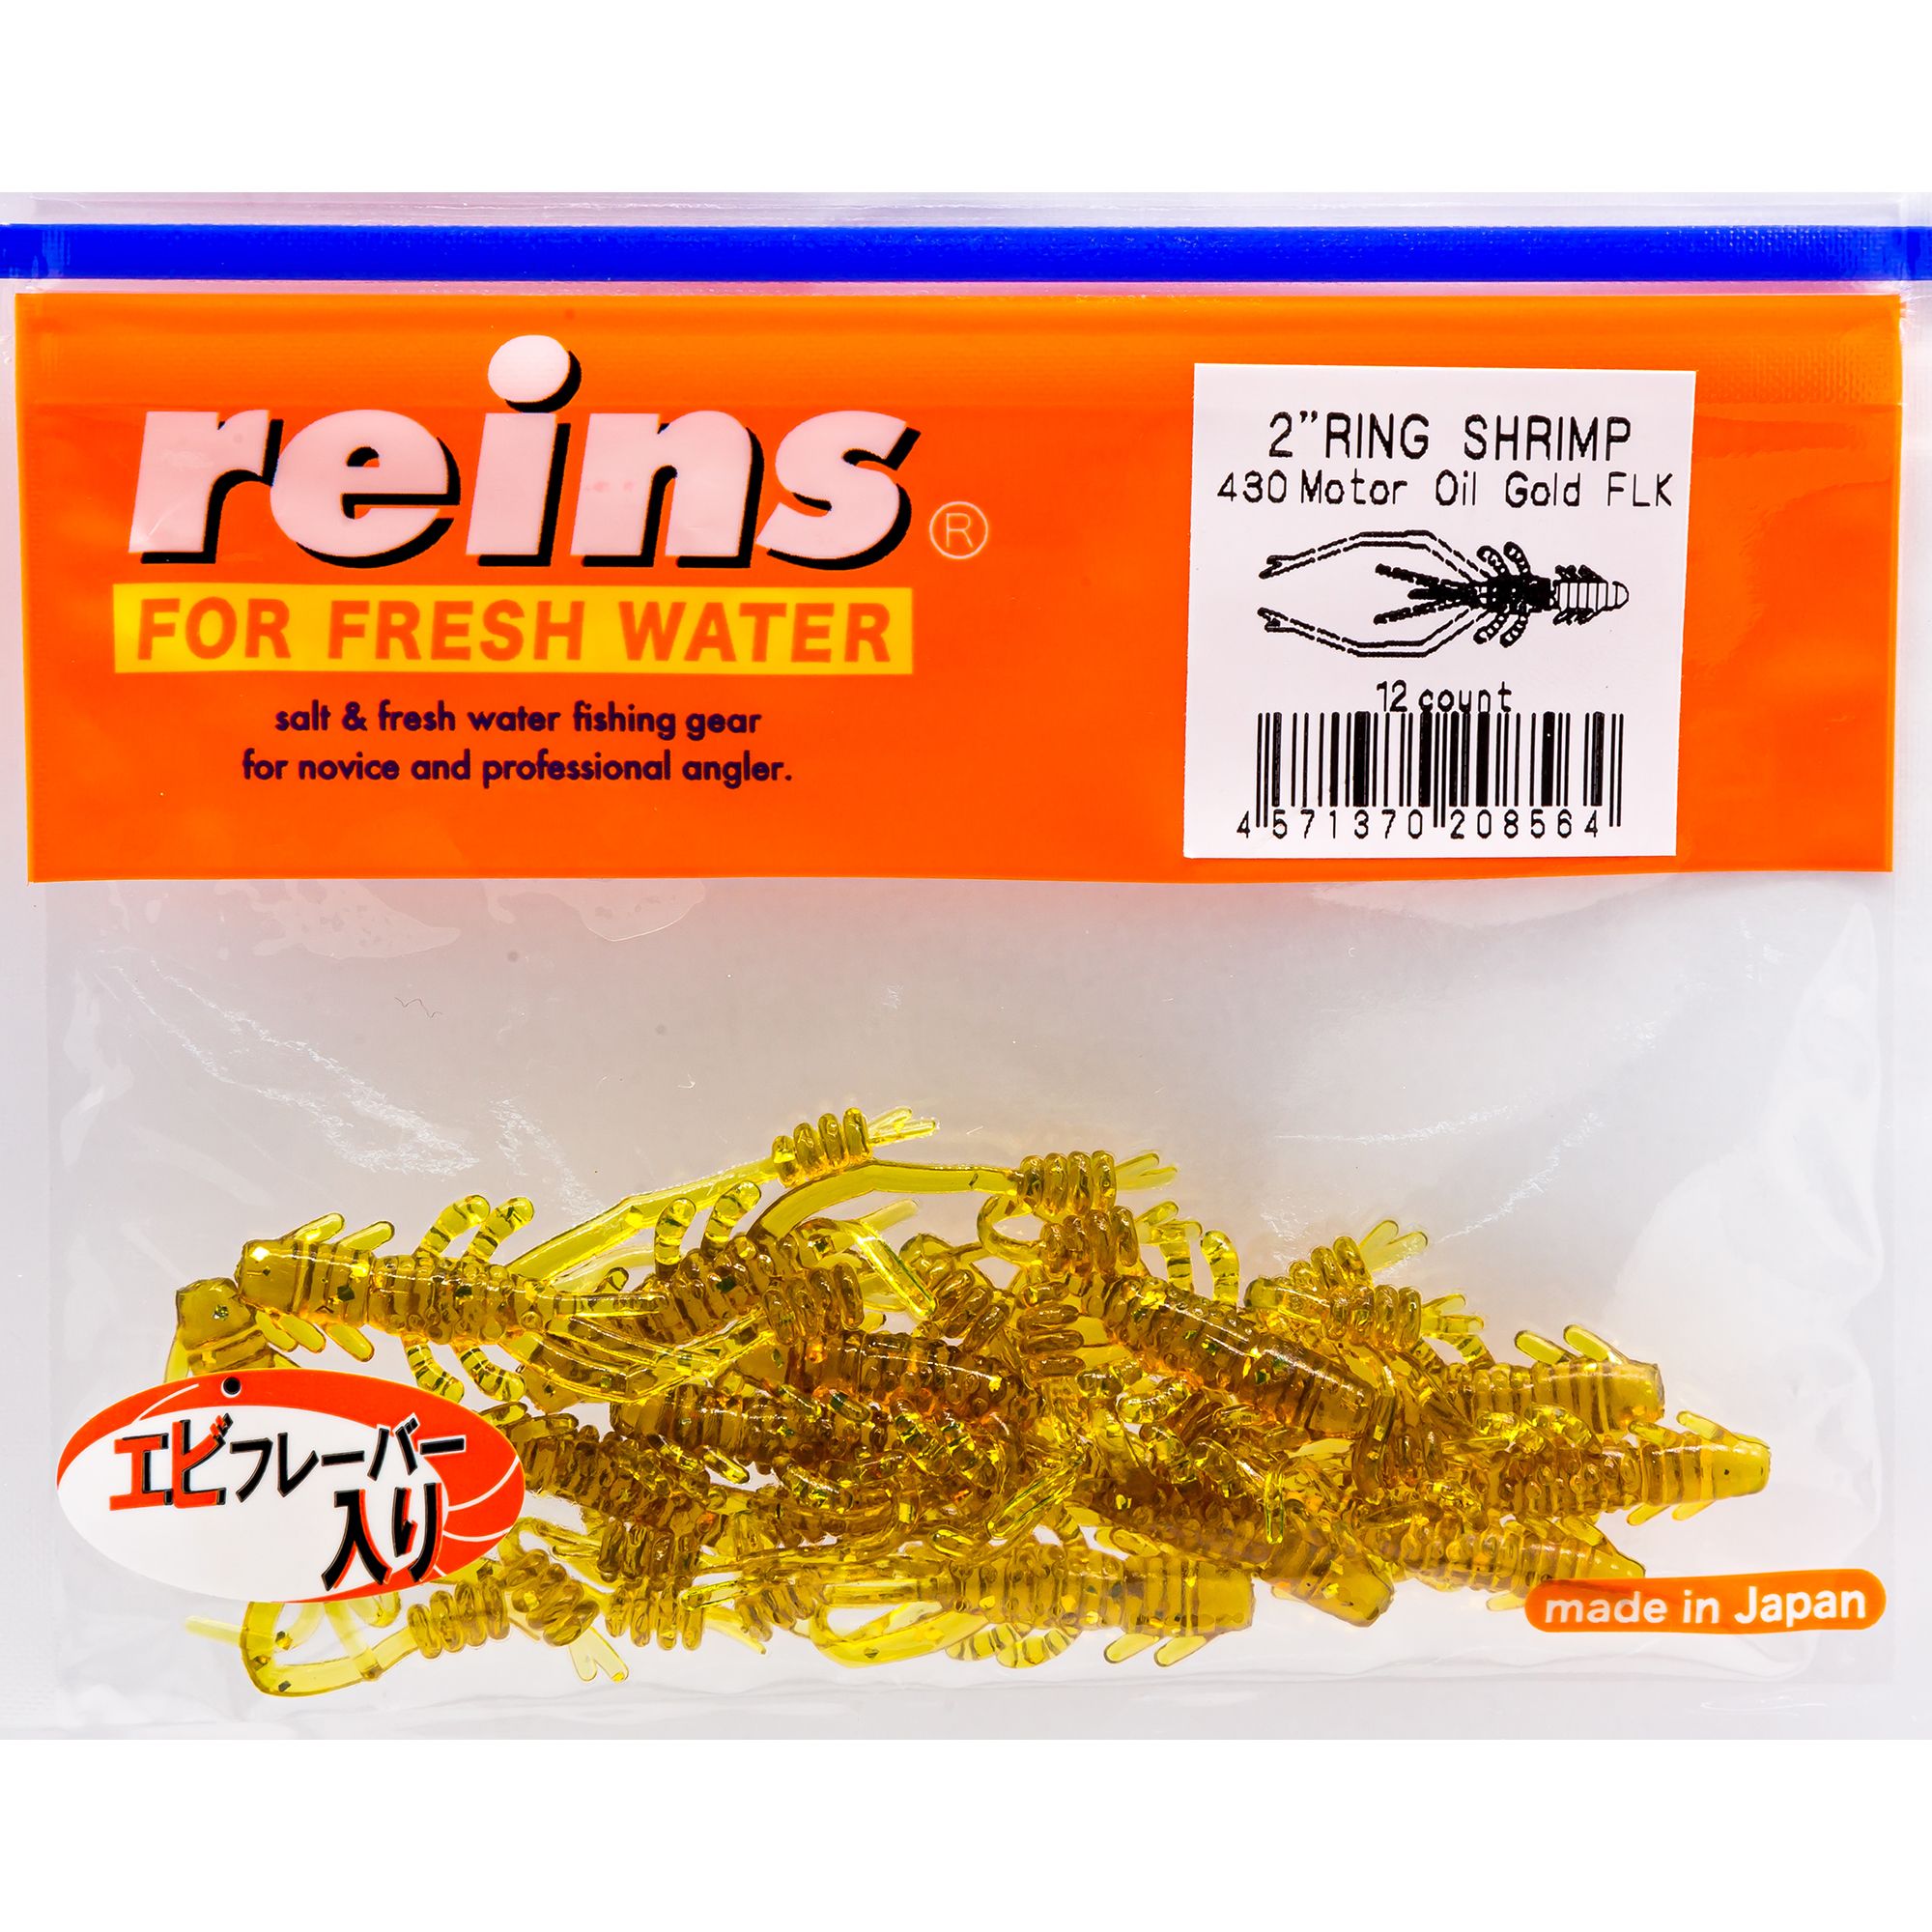 Силиконовая приманка Reins Ring Shrimp 50 мм цвет 430 Motor Oil Gold FLK 12 шт